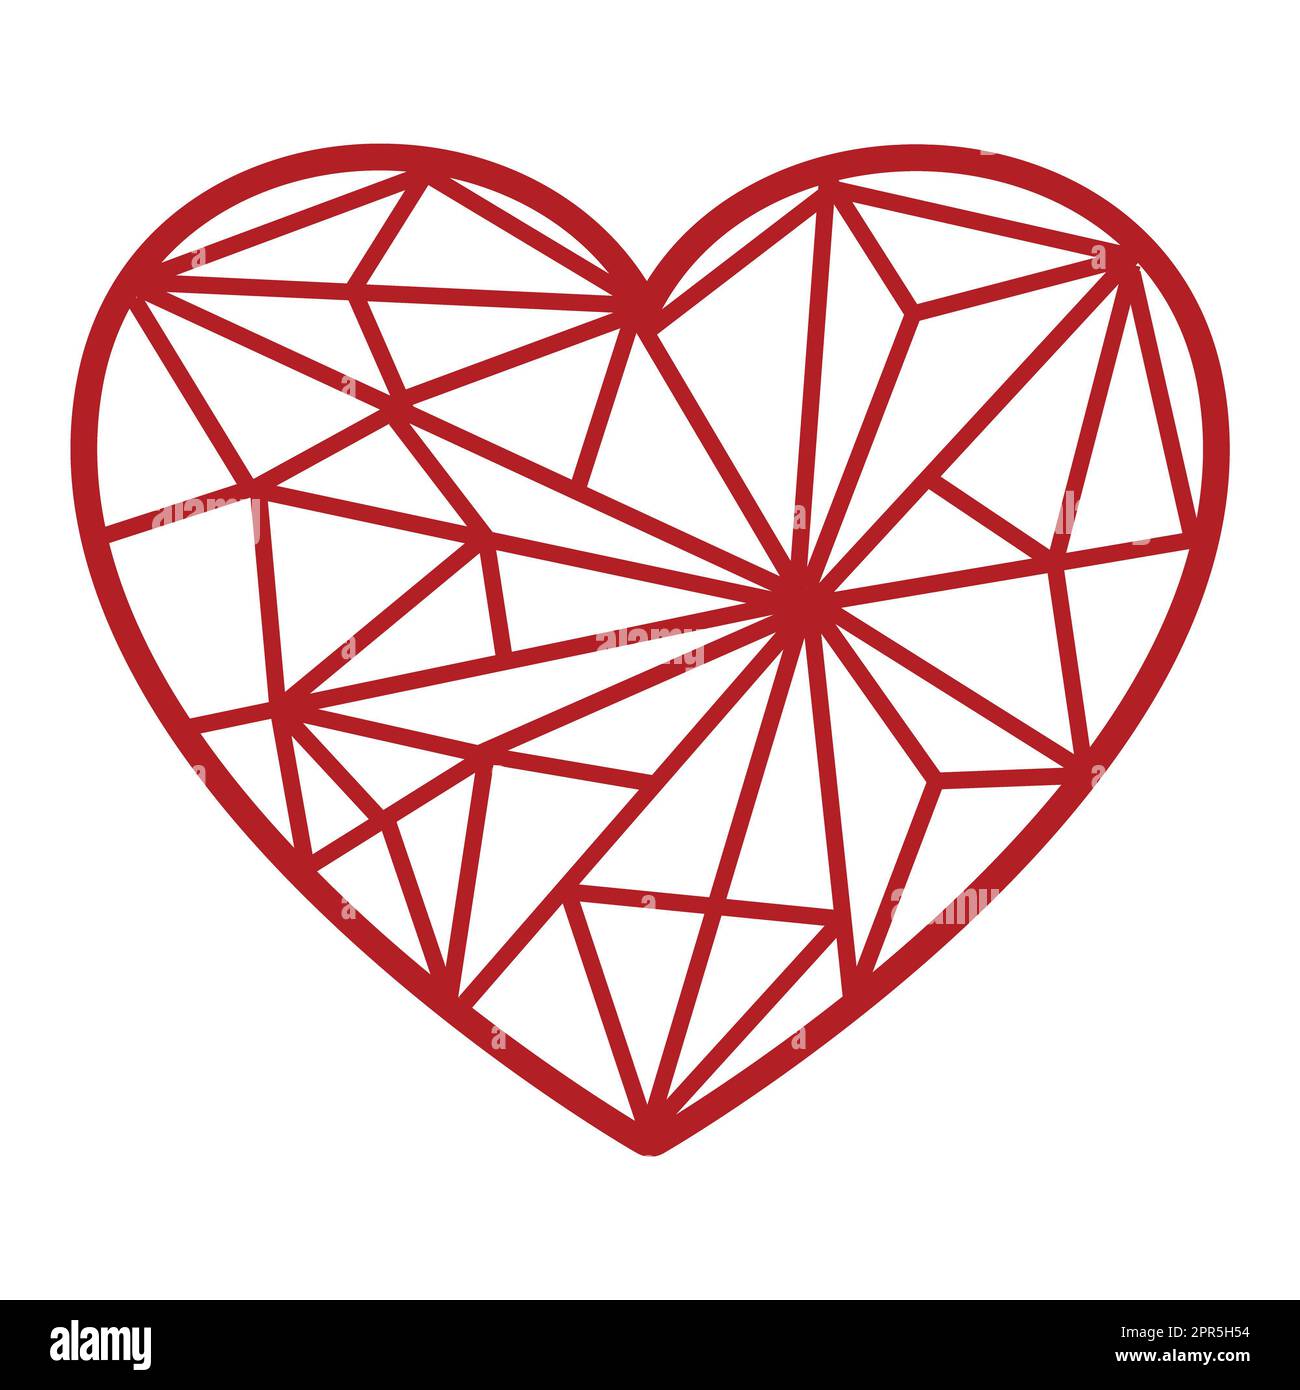 Herzmosaik-Design. Das rote Herz mit Mosaikmuster macht dieses Design bezaubernd. Verwenden Sie es in Ihren Designprojekten, um Seiten, Grußkarten usw. zu malen Stockfoto